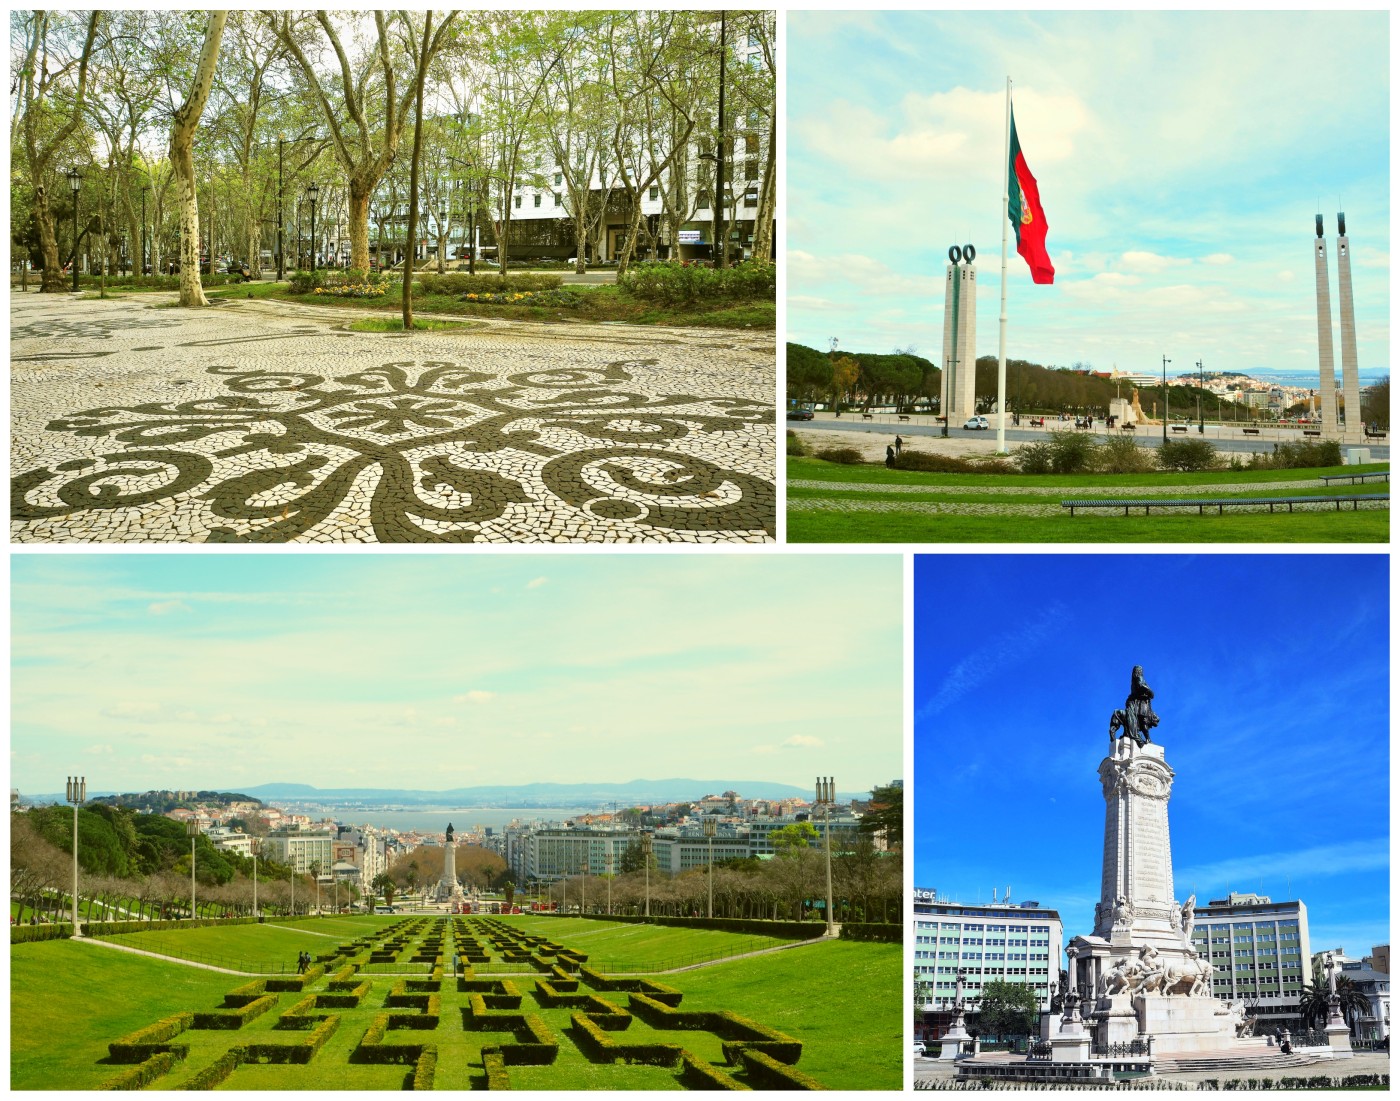 2 dias em Lisboa - Avenida da Liberdade e Parque Eduardo VII